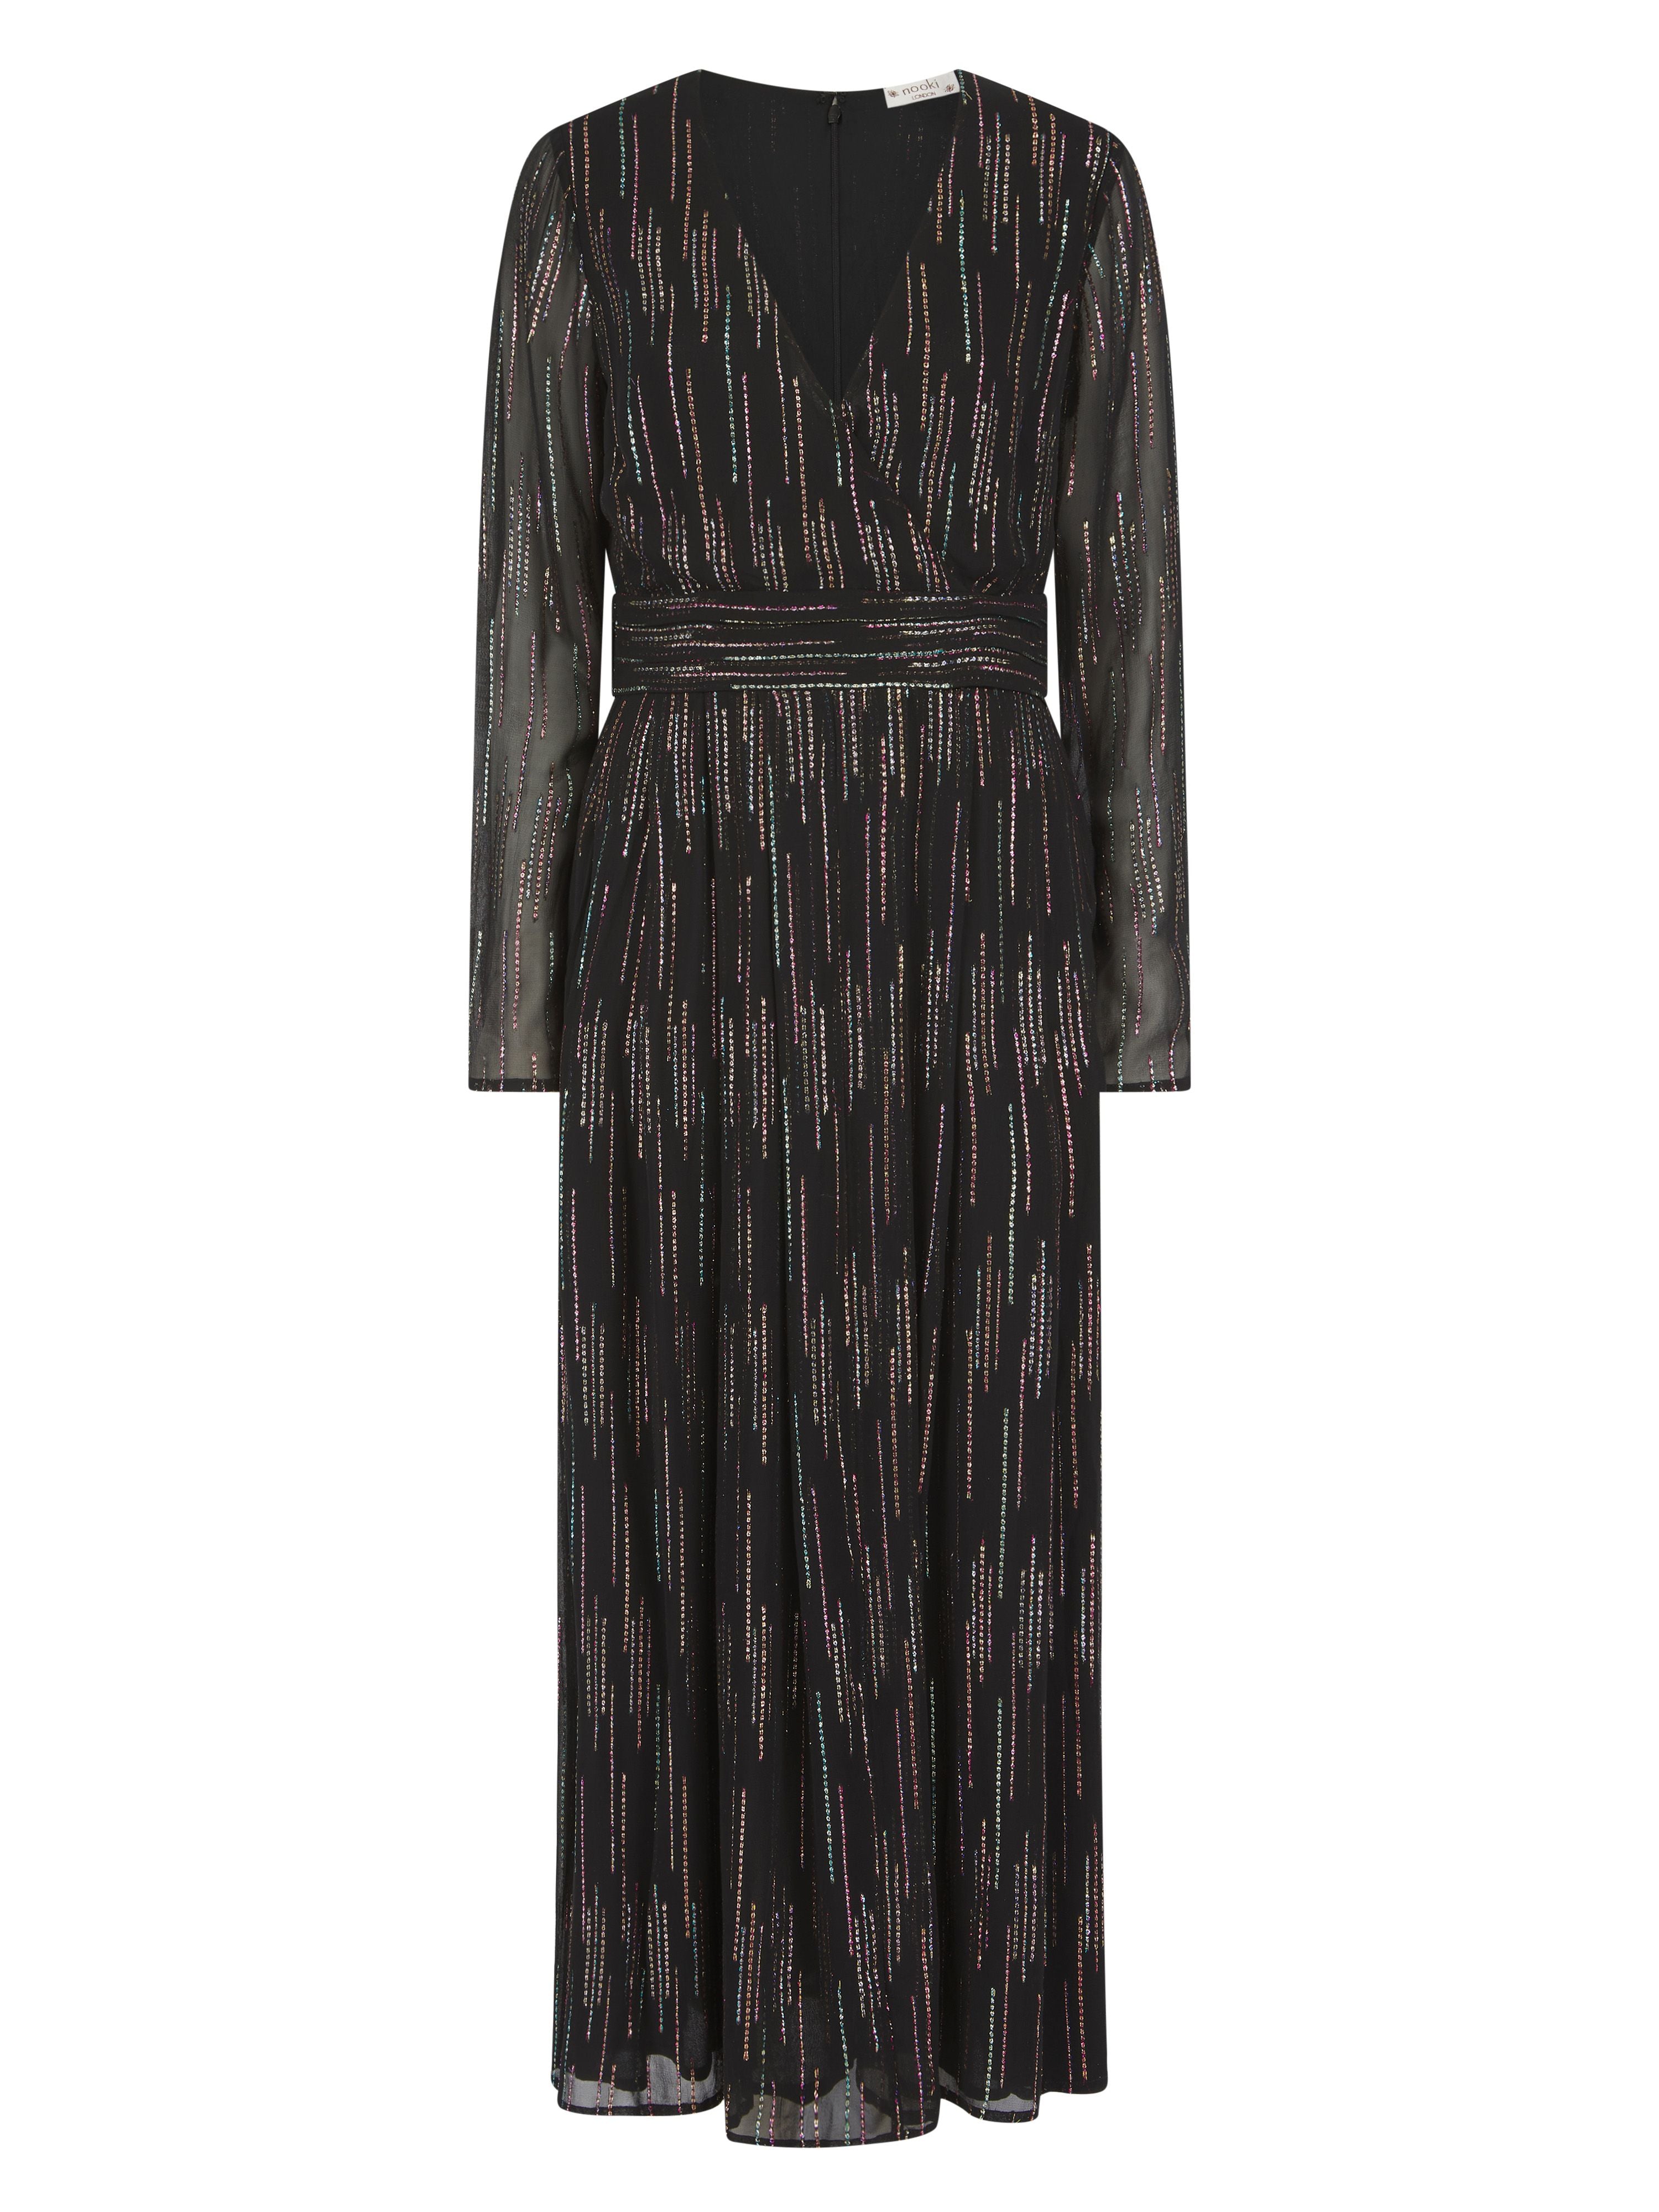 Women’s Mariah Metallic Jacquard Dress-Black Large Nooki Design